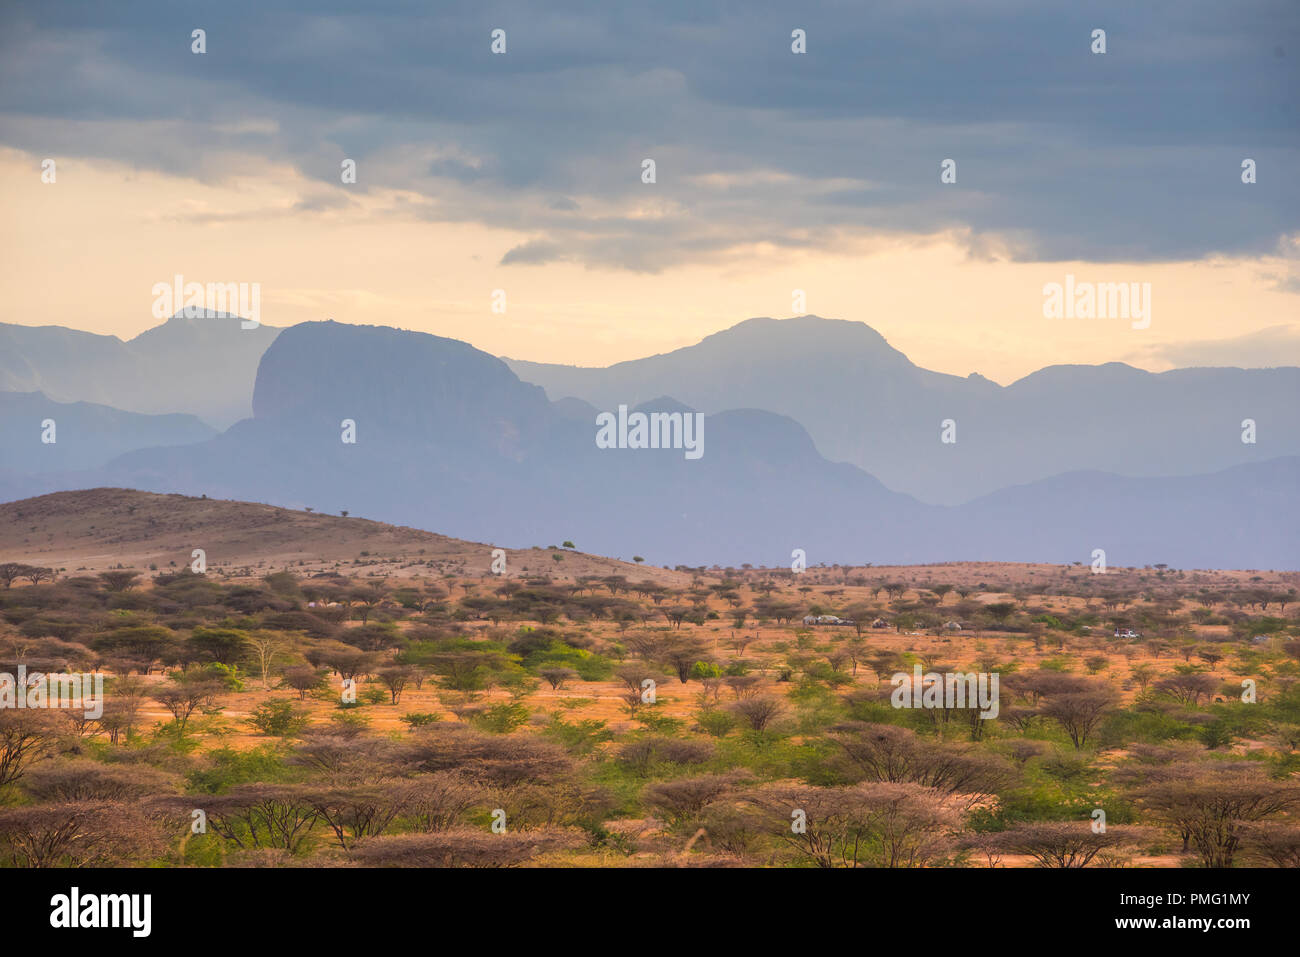 Desert shrub-filled plains in evening light against the backdrop of a blue jagged mountain range near Marsabit, in the Kaisut desert, Northern Kenya Stock Photo